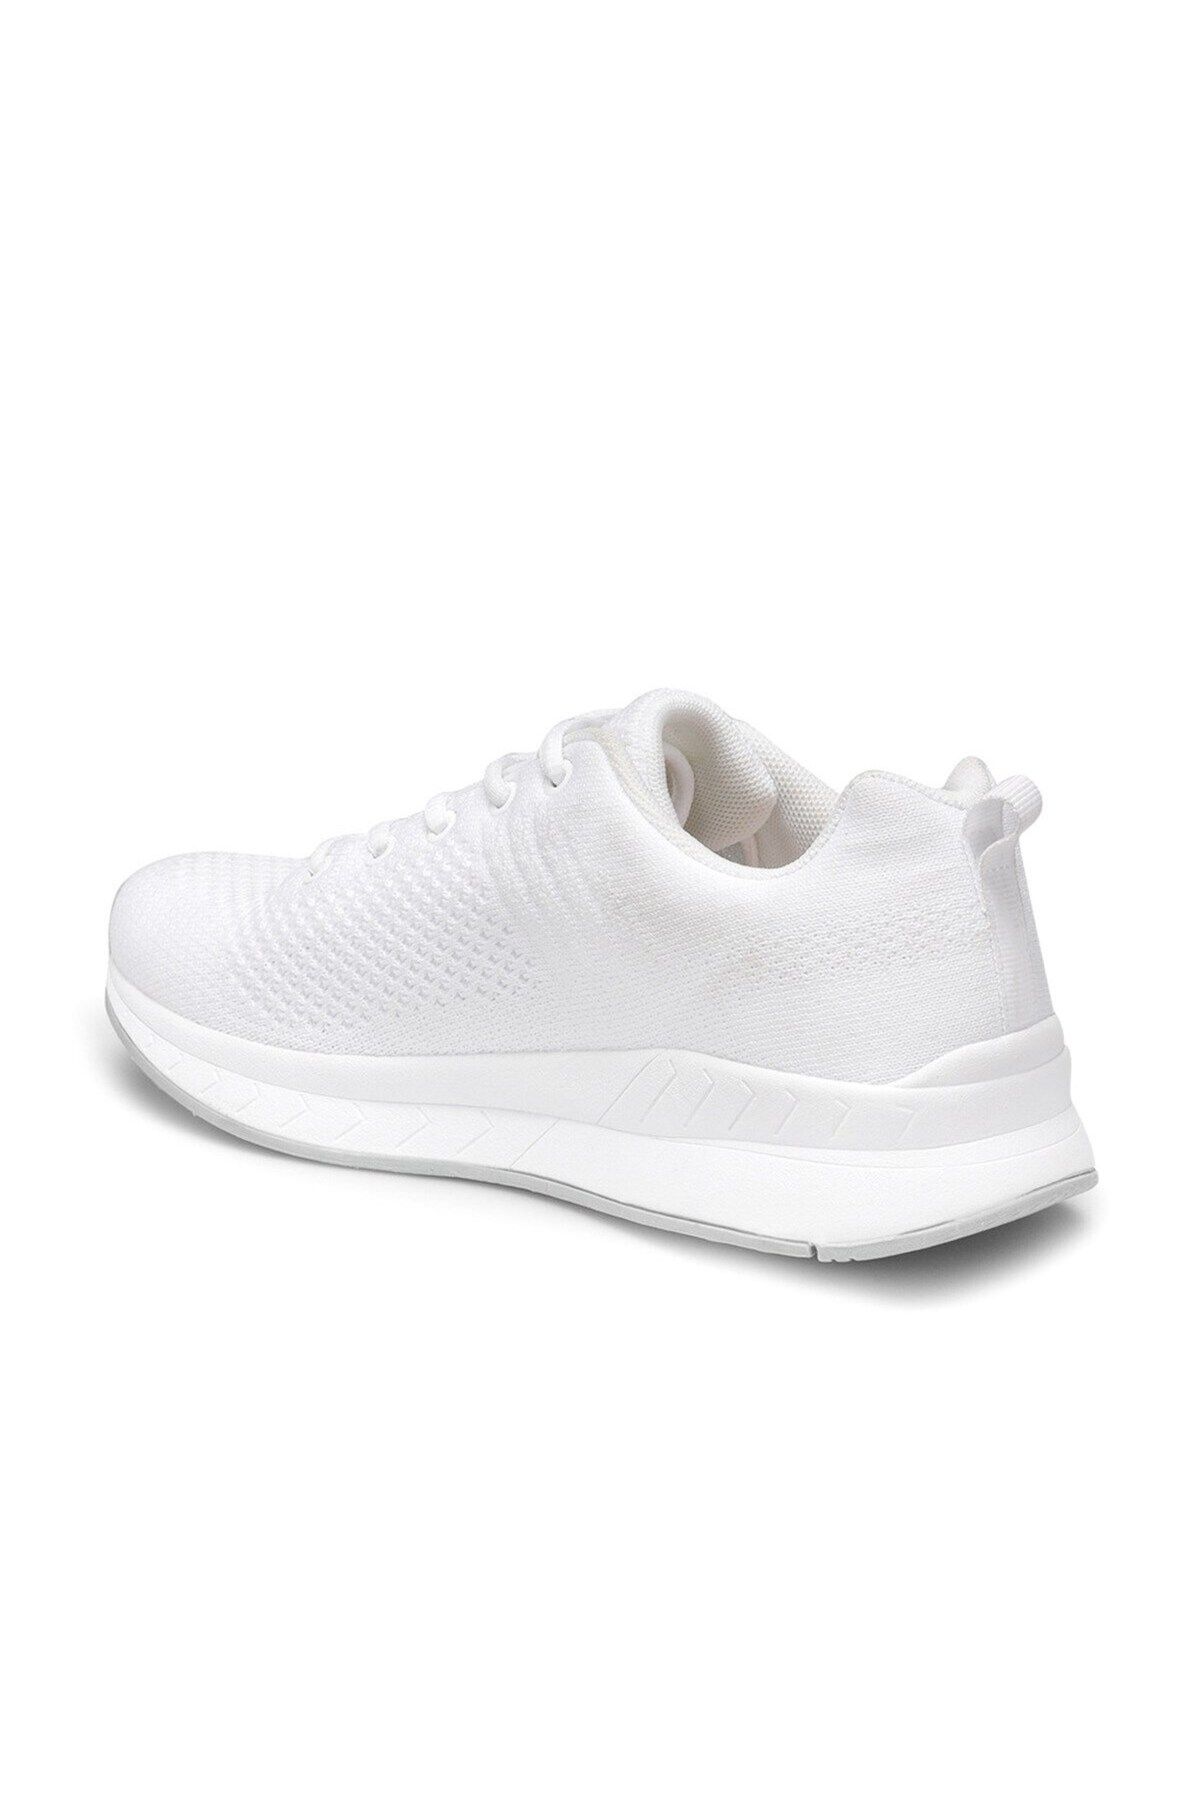 Kadın Beyaz Kadın Spor Ayakkabı As00158165-beyaz